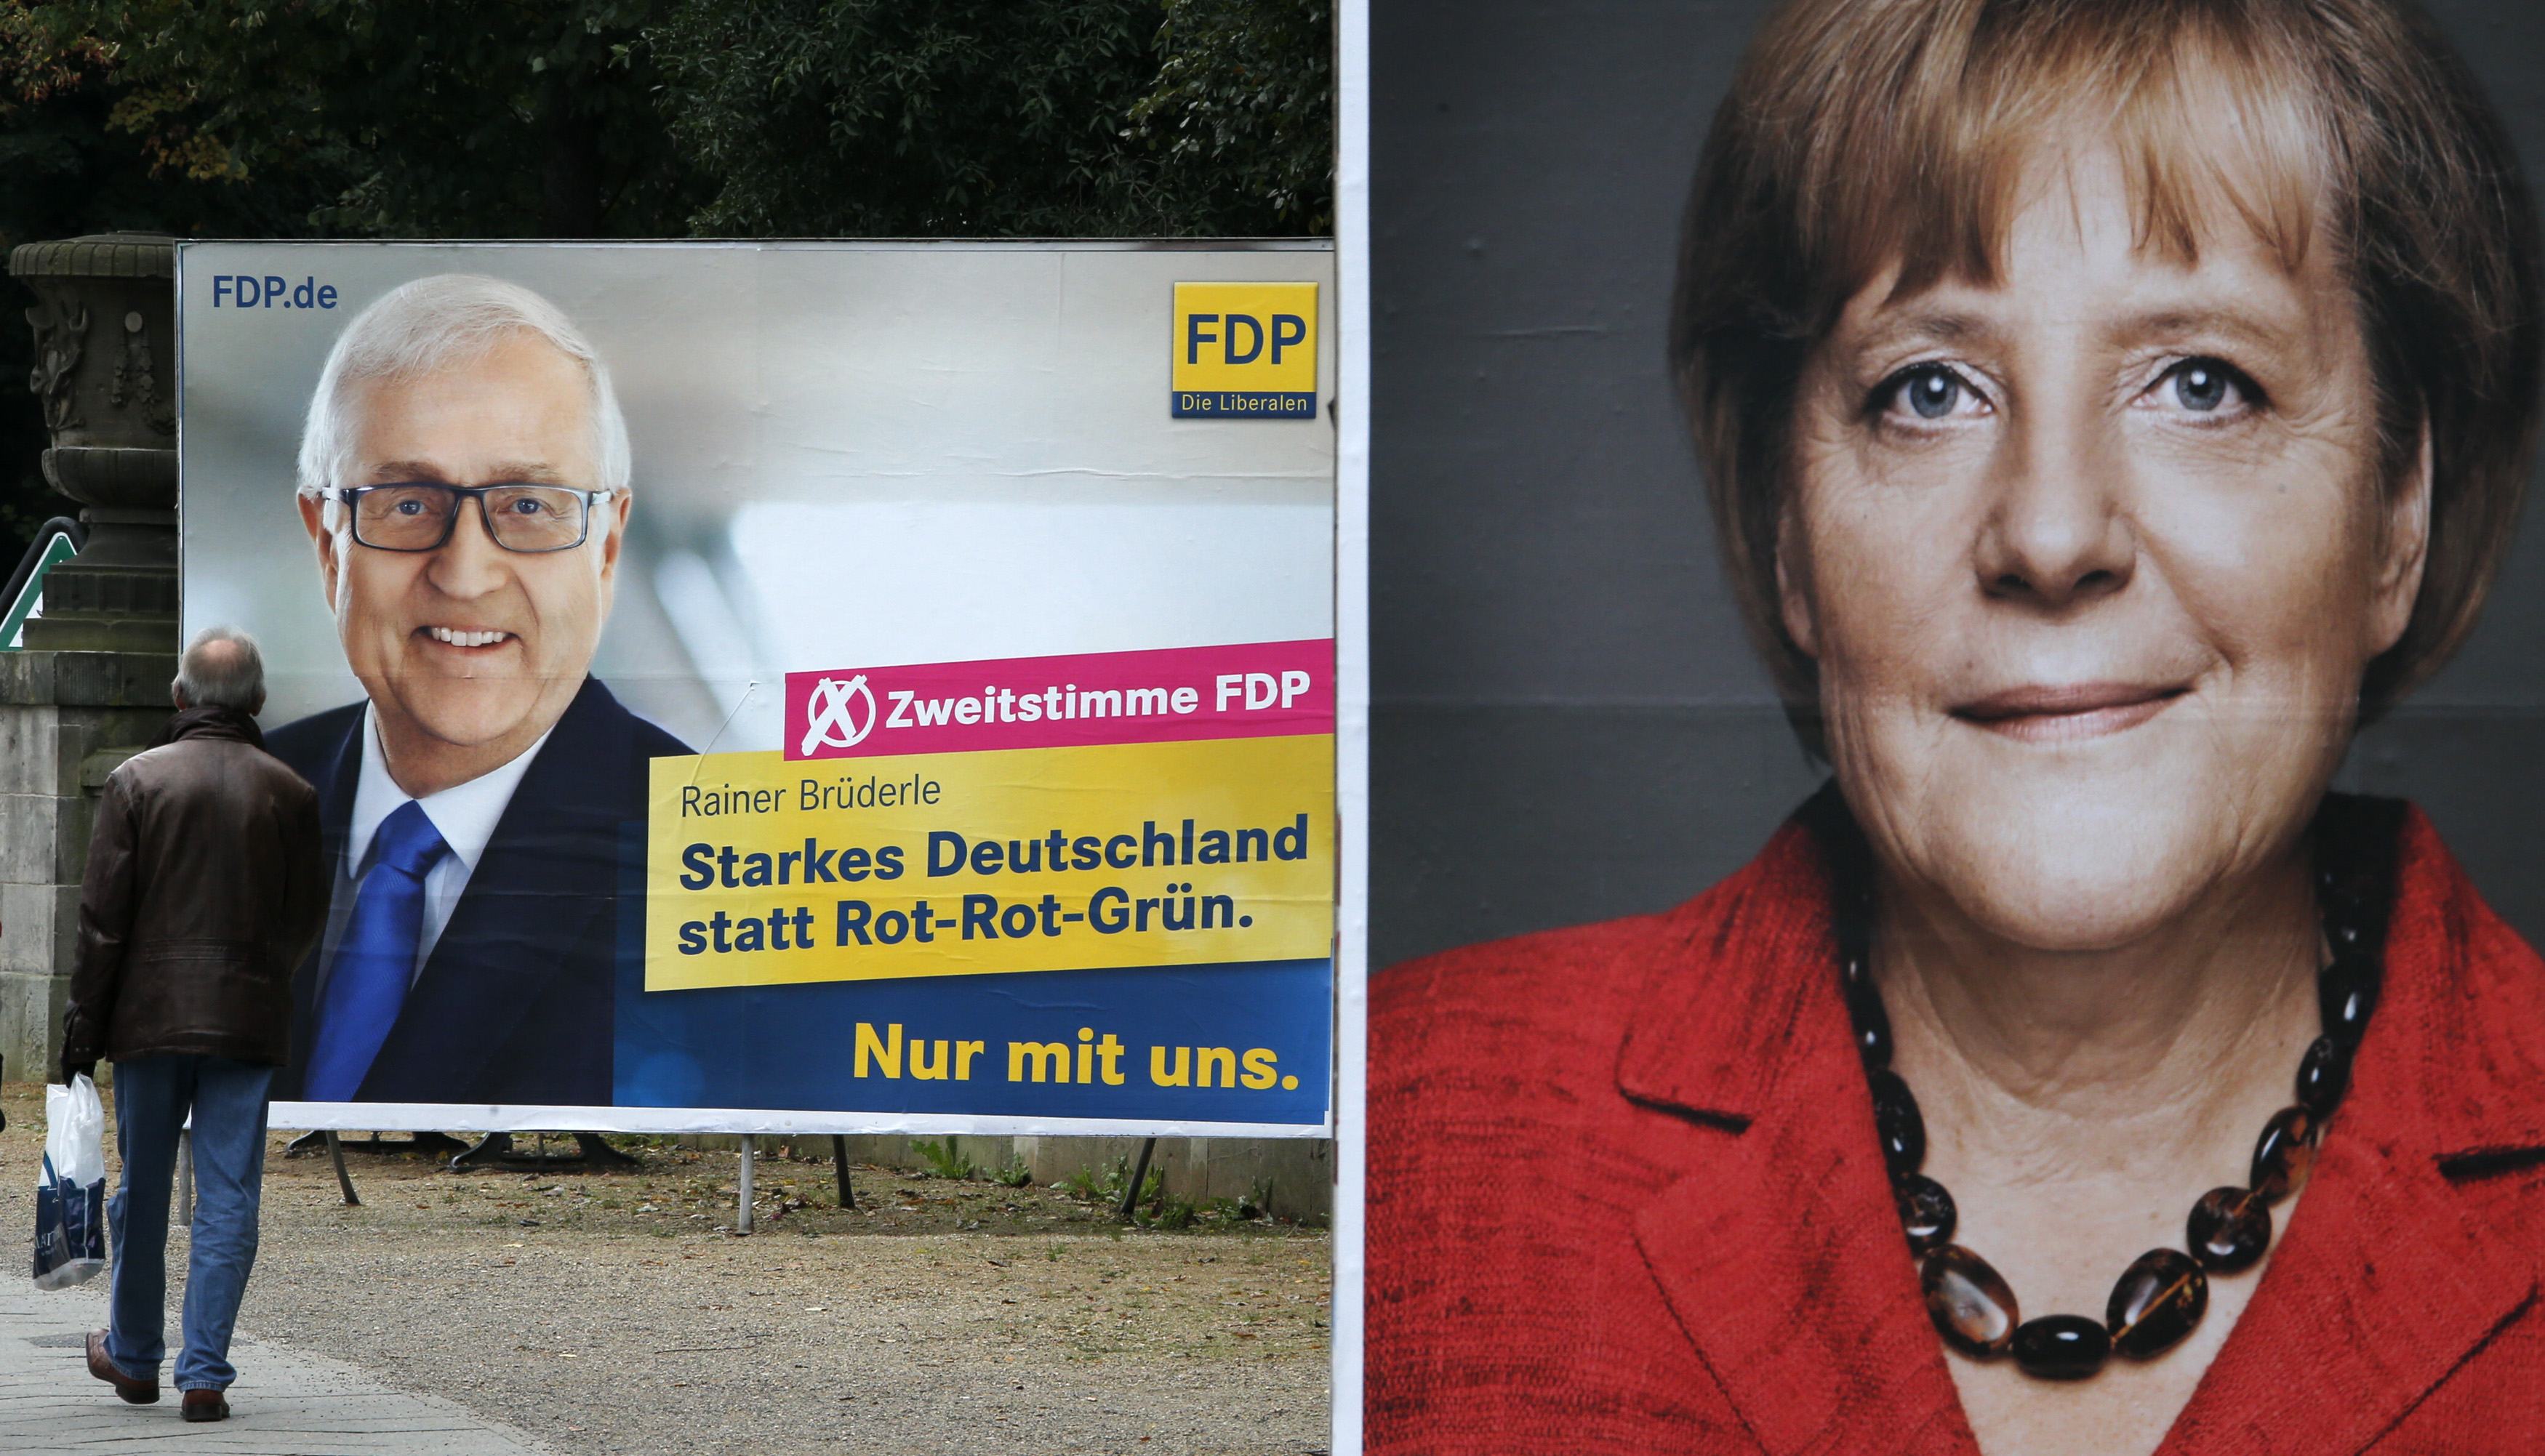 Νέες Εποχές: Γερμανικές εκλογές – οι φόβοι και οι ελπίδες